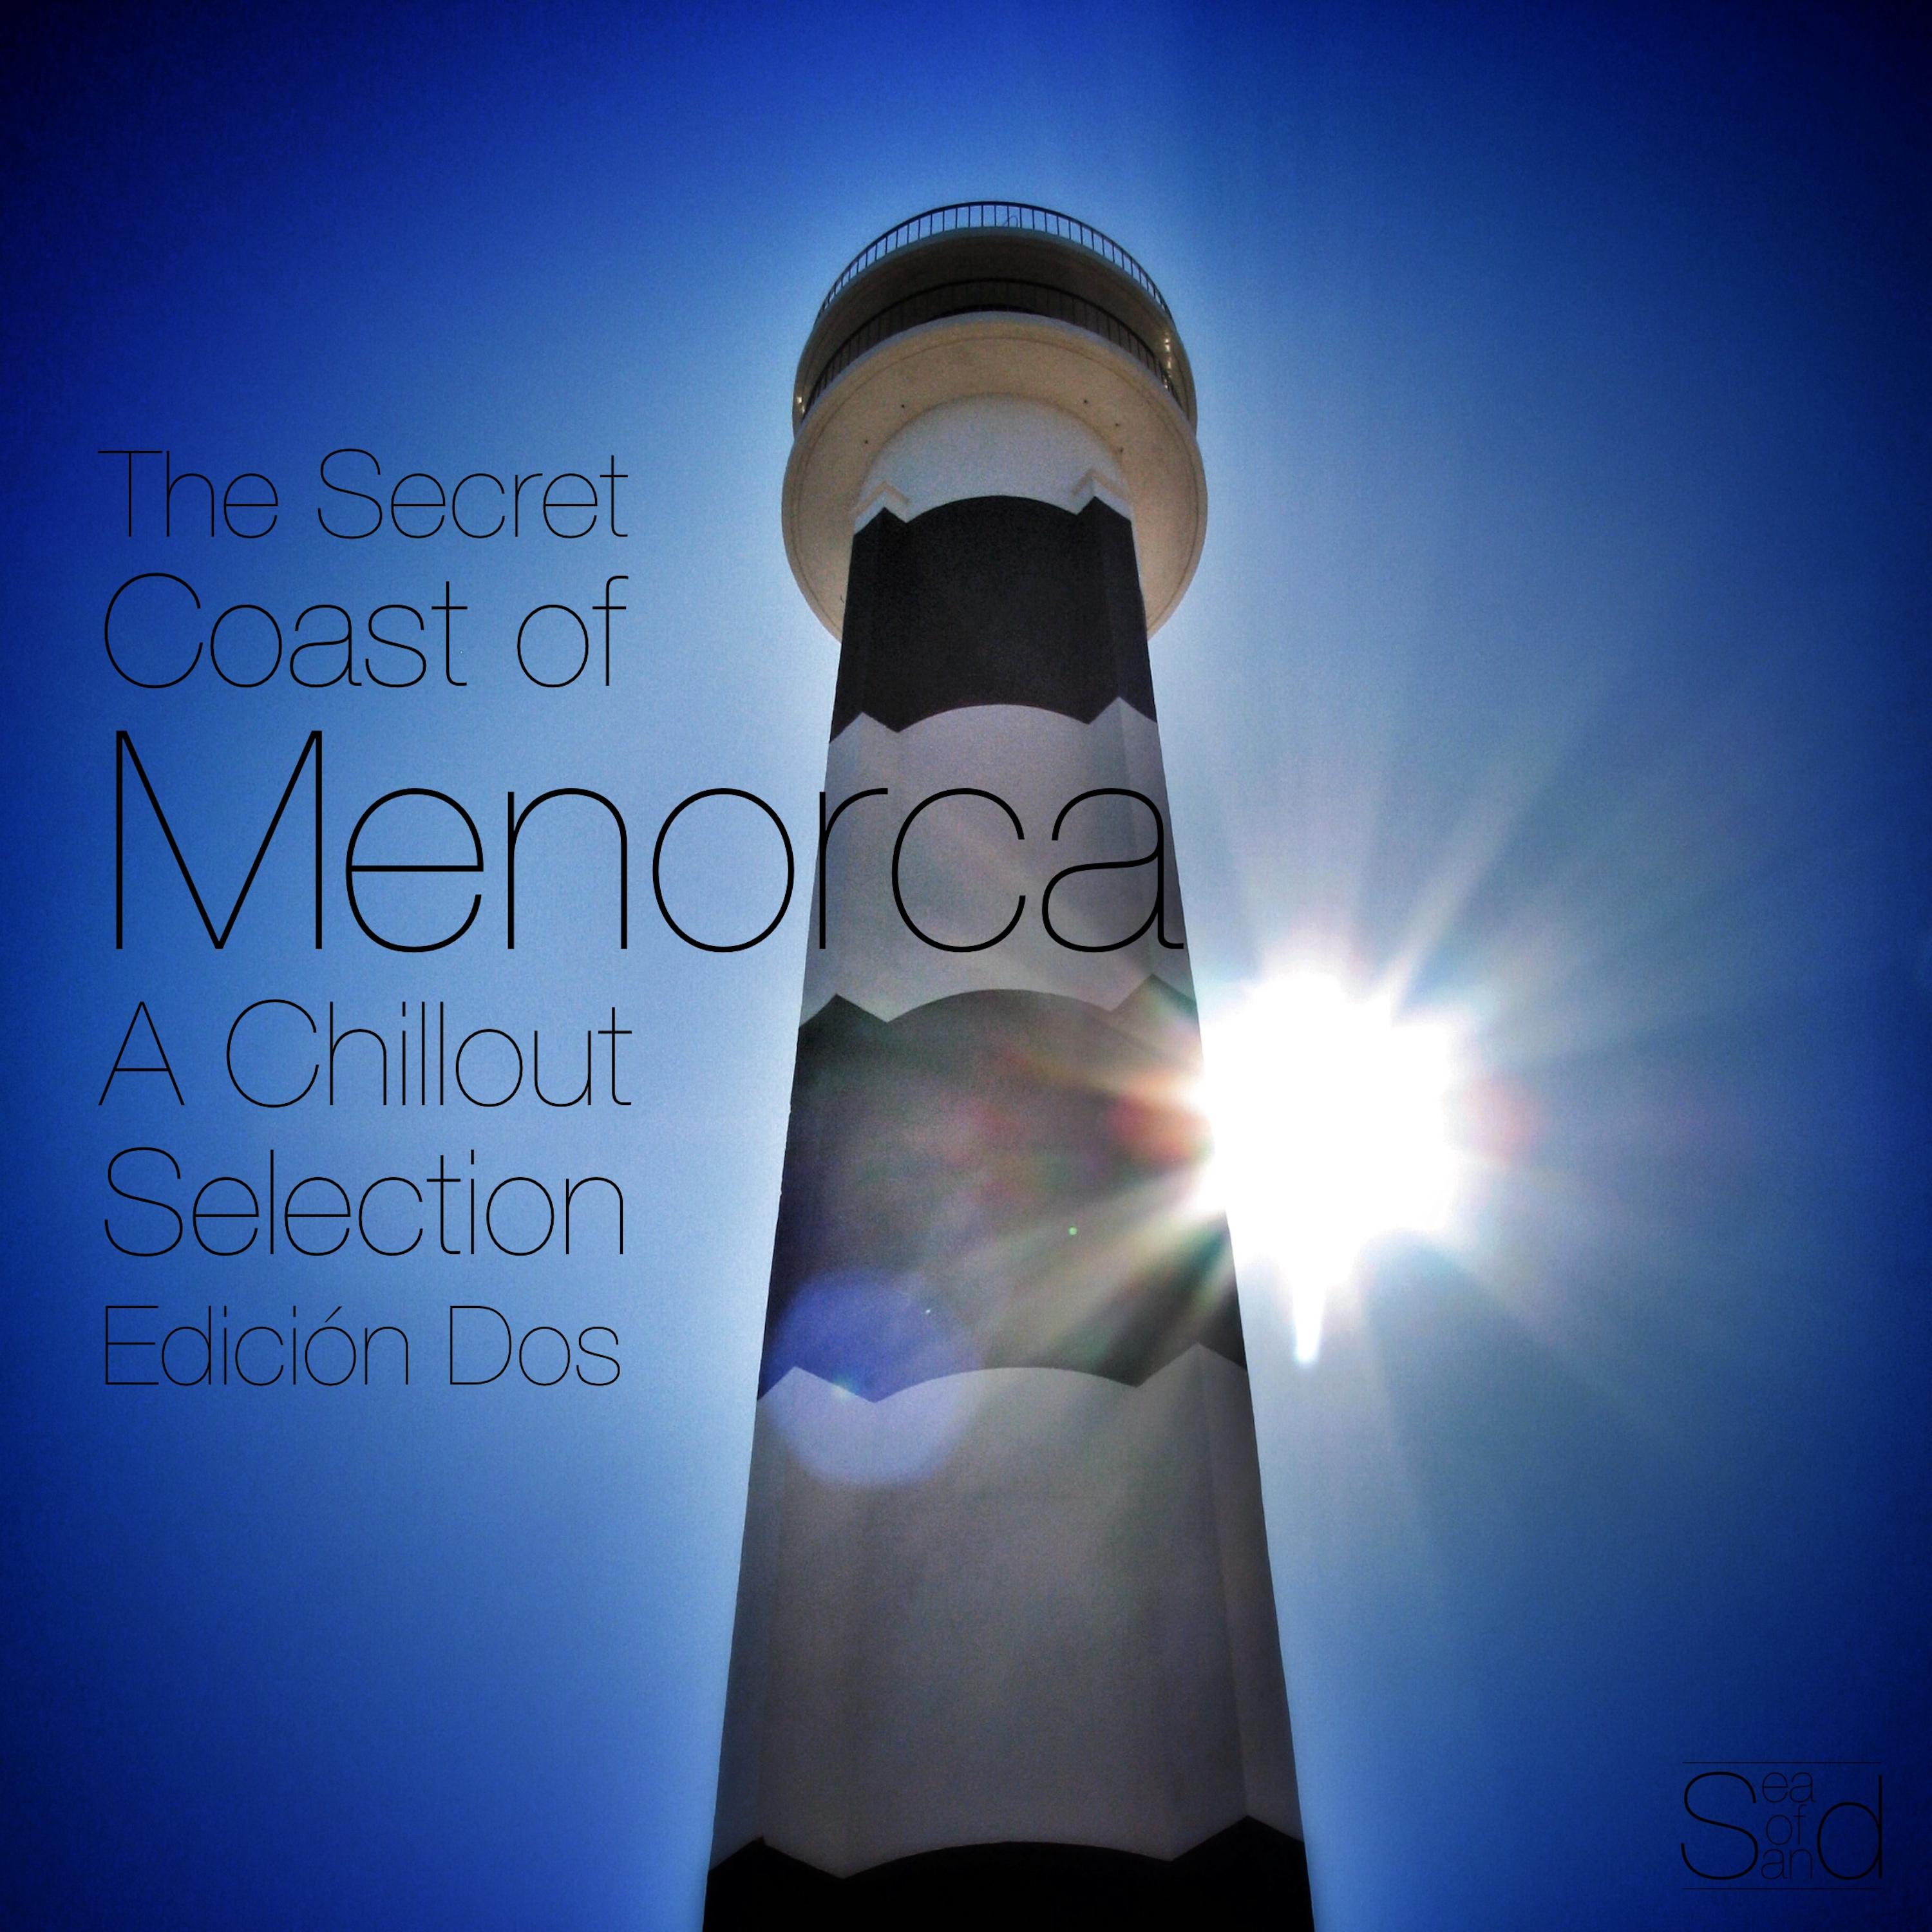 The Secret Coast of Menorca  A Chillout Selection Edicio n Dos